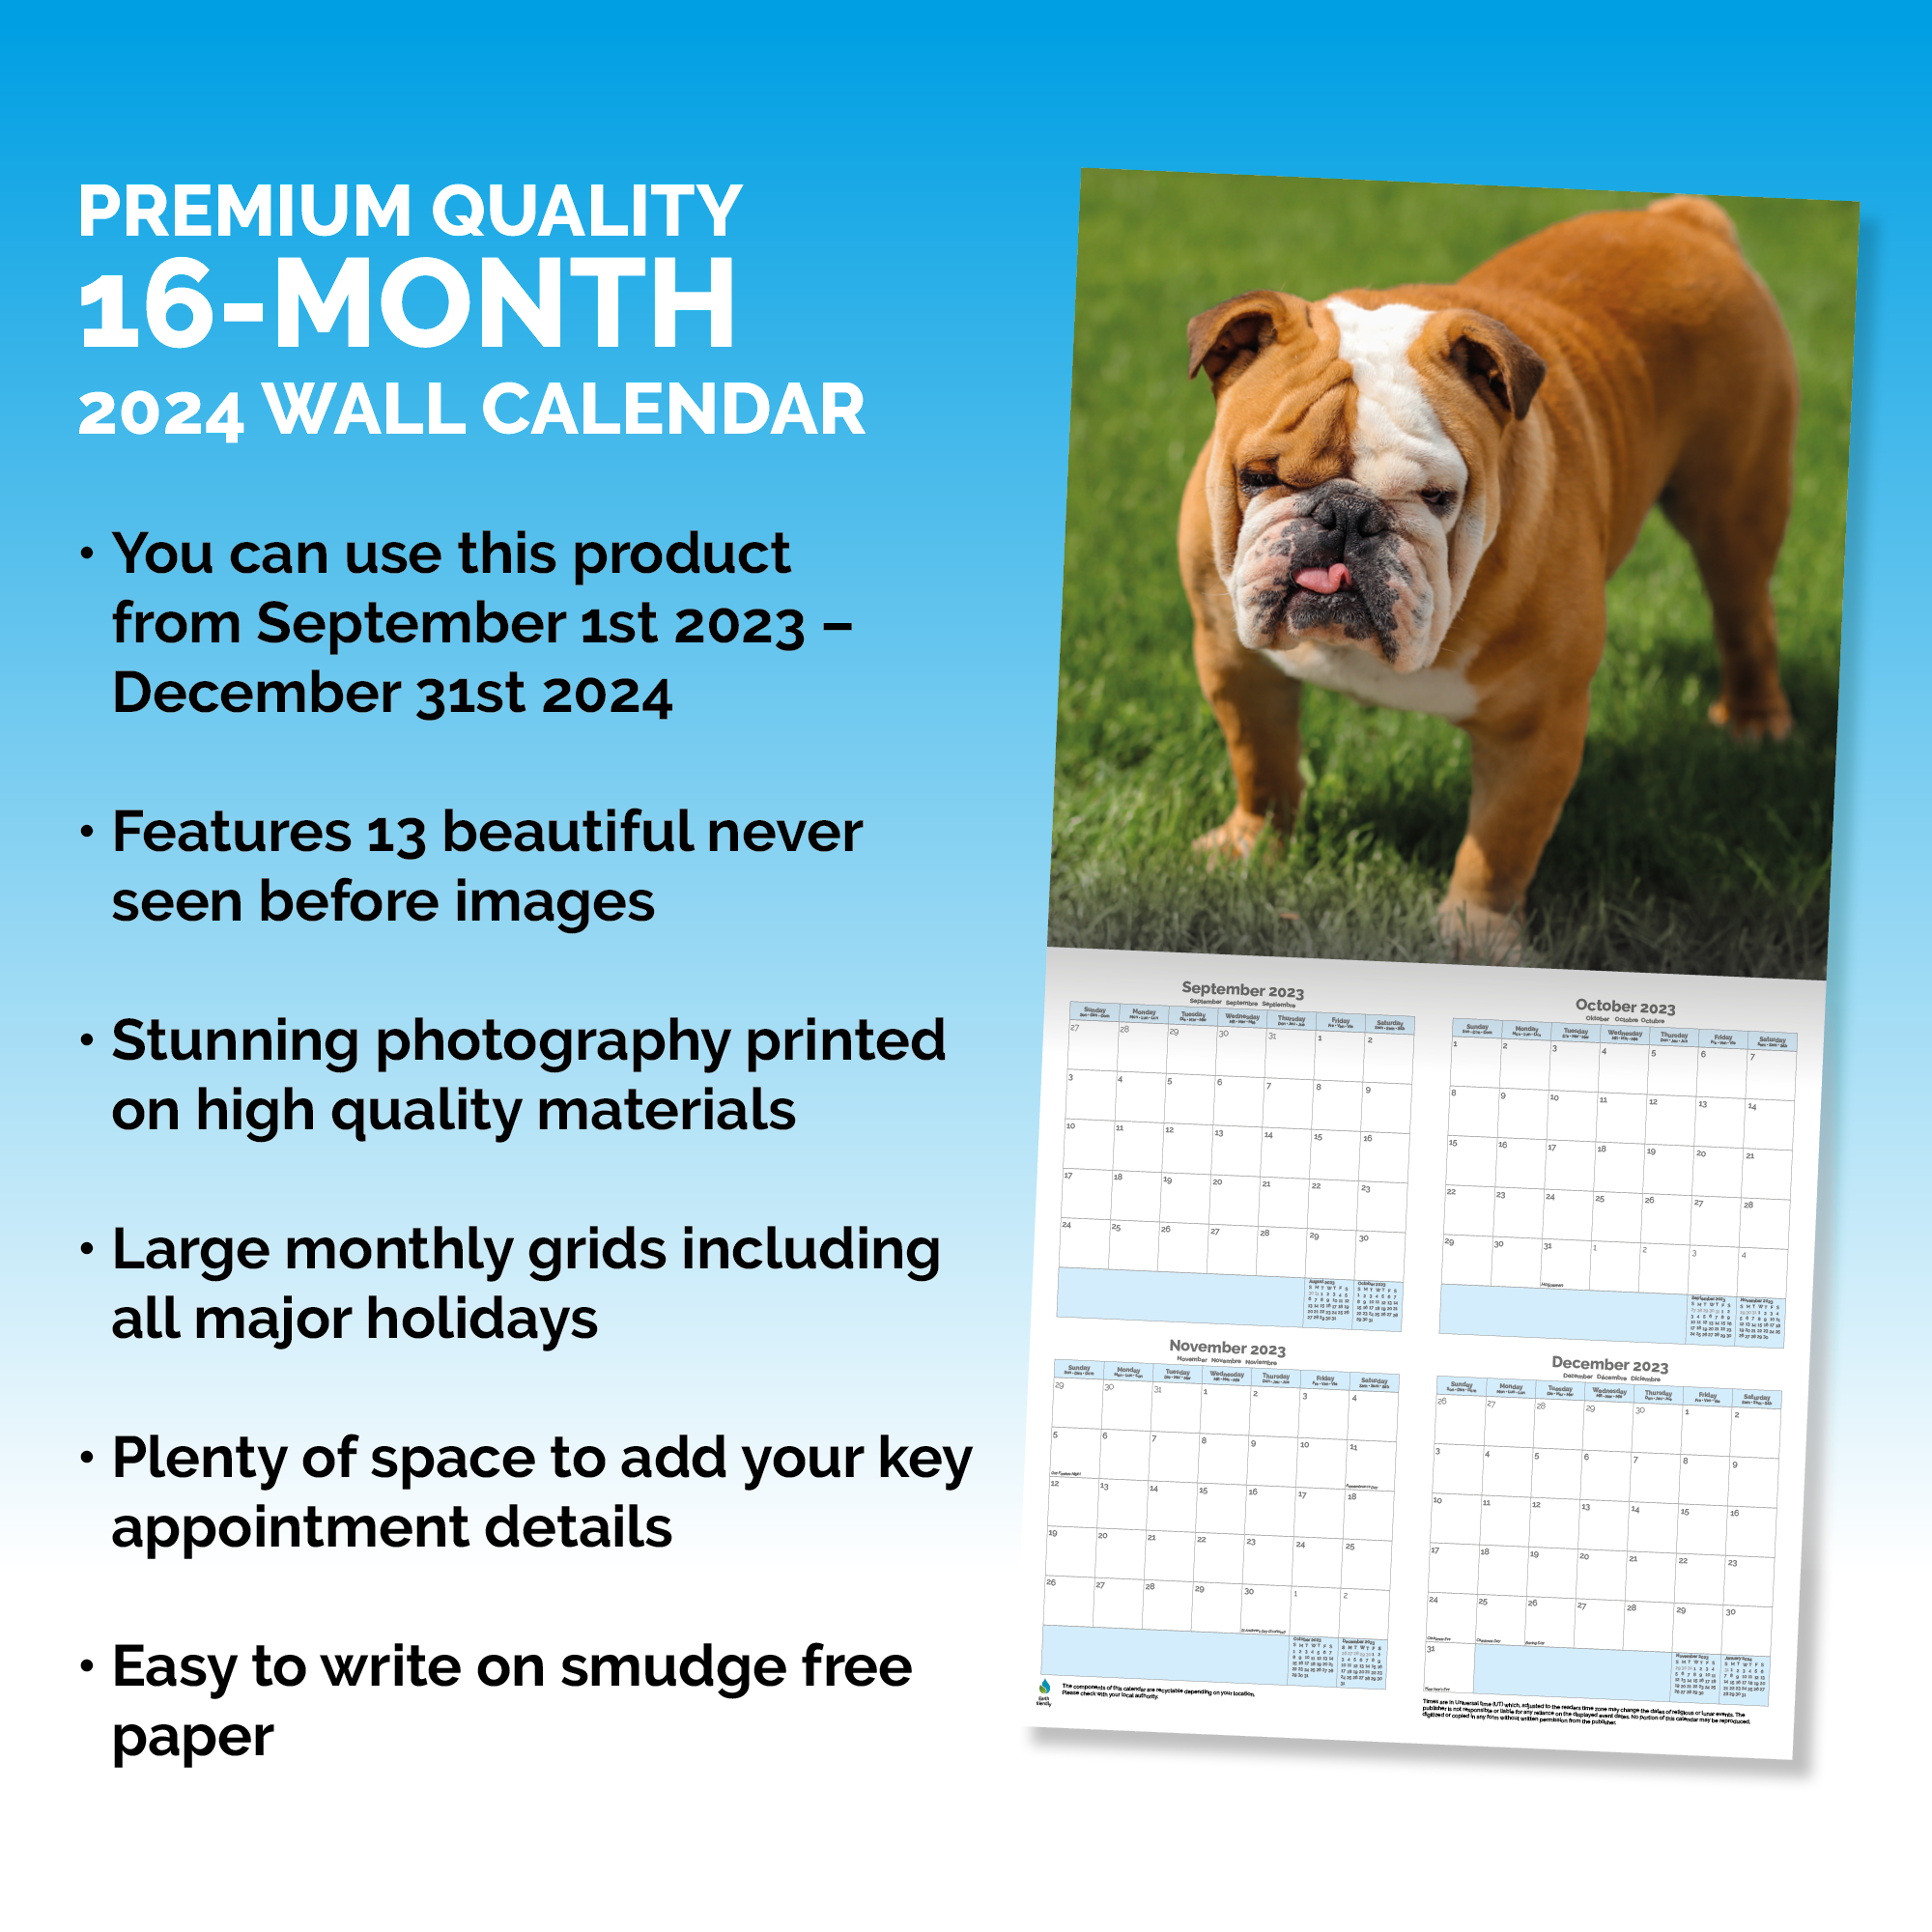 Bulldog Calendar 2024